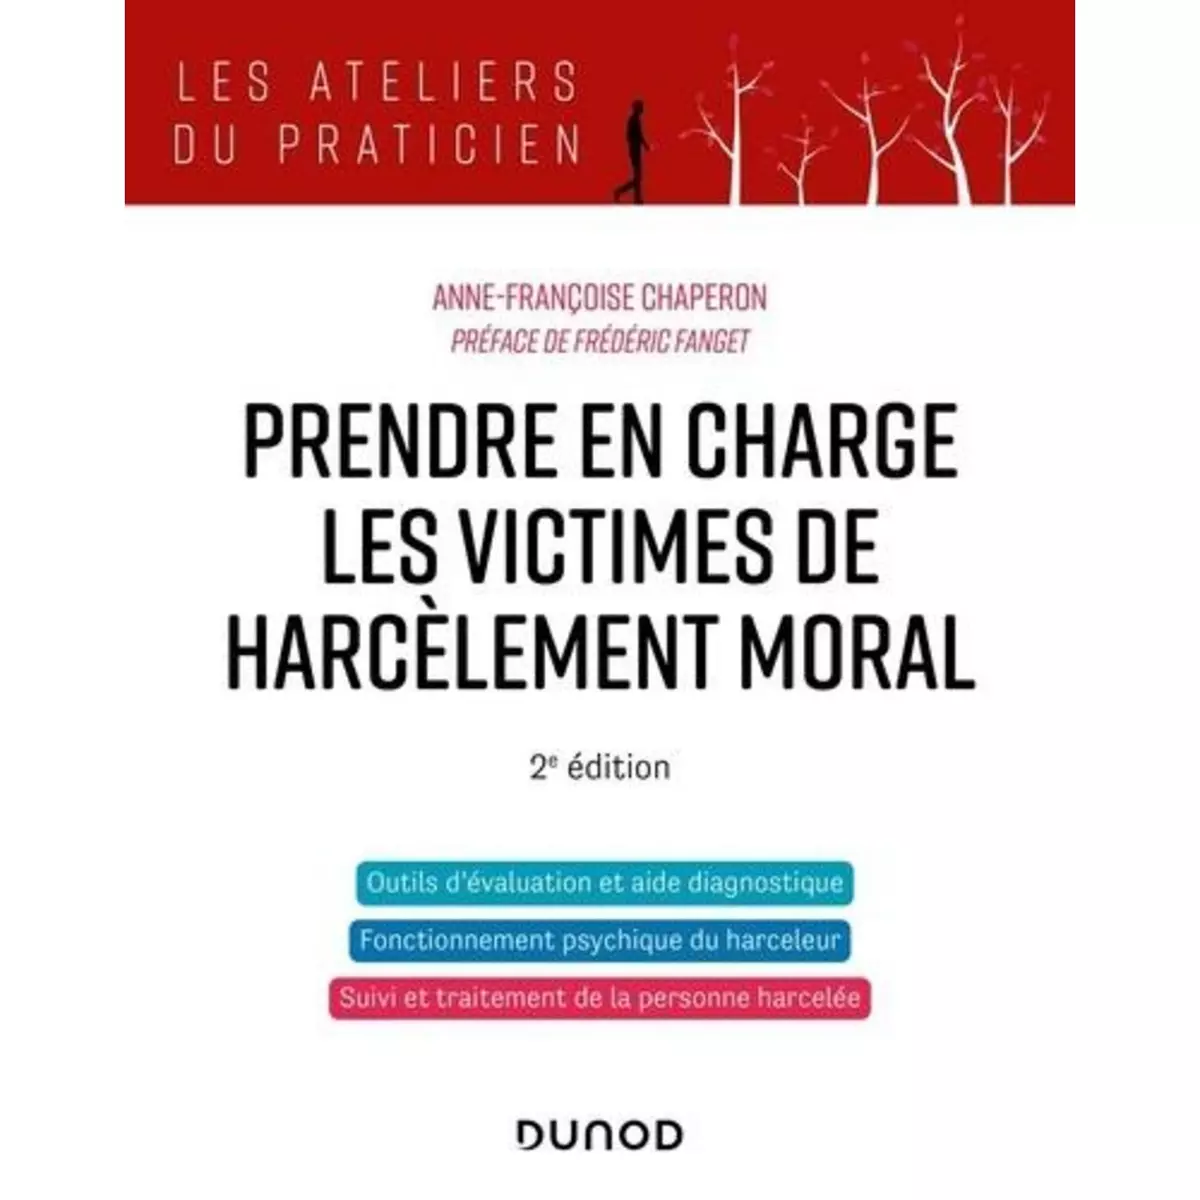  PRENDRE EN CHARGE LES VICTIMES DE HARCELEMENT MORAL. 2E EDITION, Chaperon Anne-Françoise